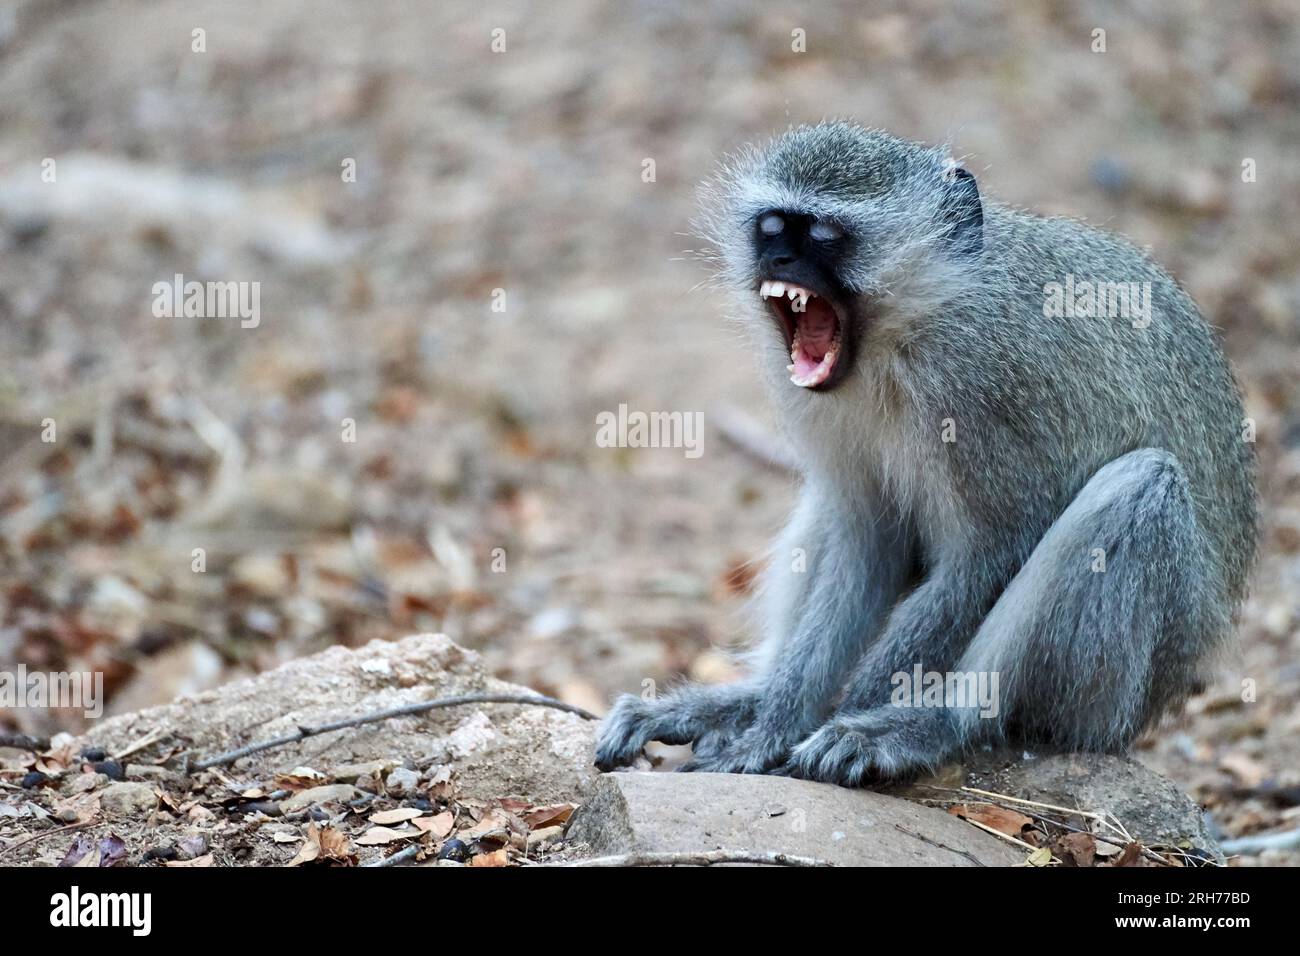 Grauer Affe, der auf dem Boden sitzt, mit offenem Berg, der gähnt oder schreit Stockfoto